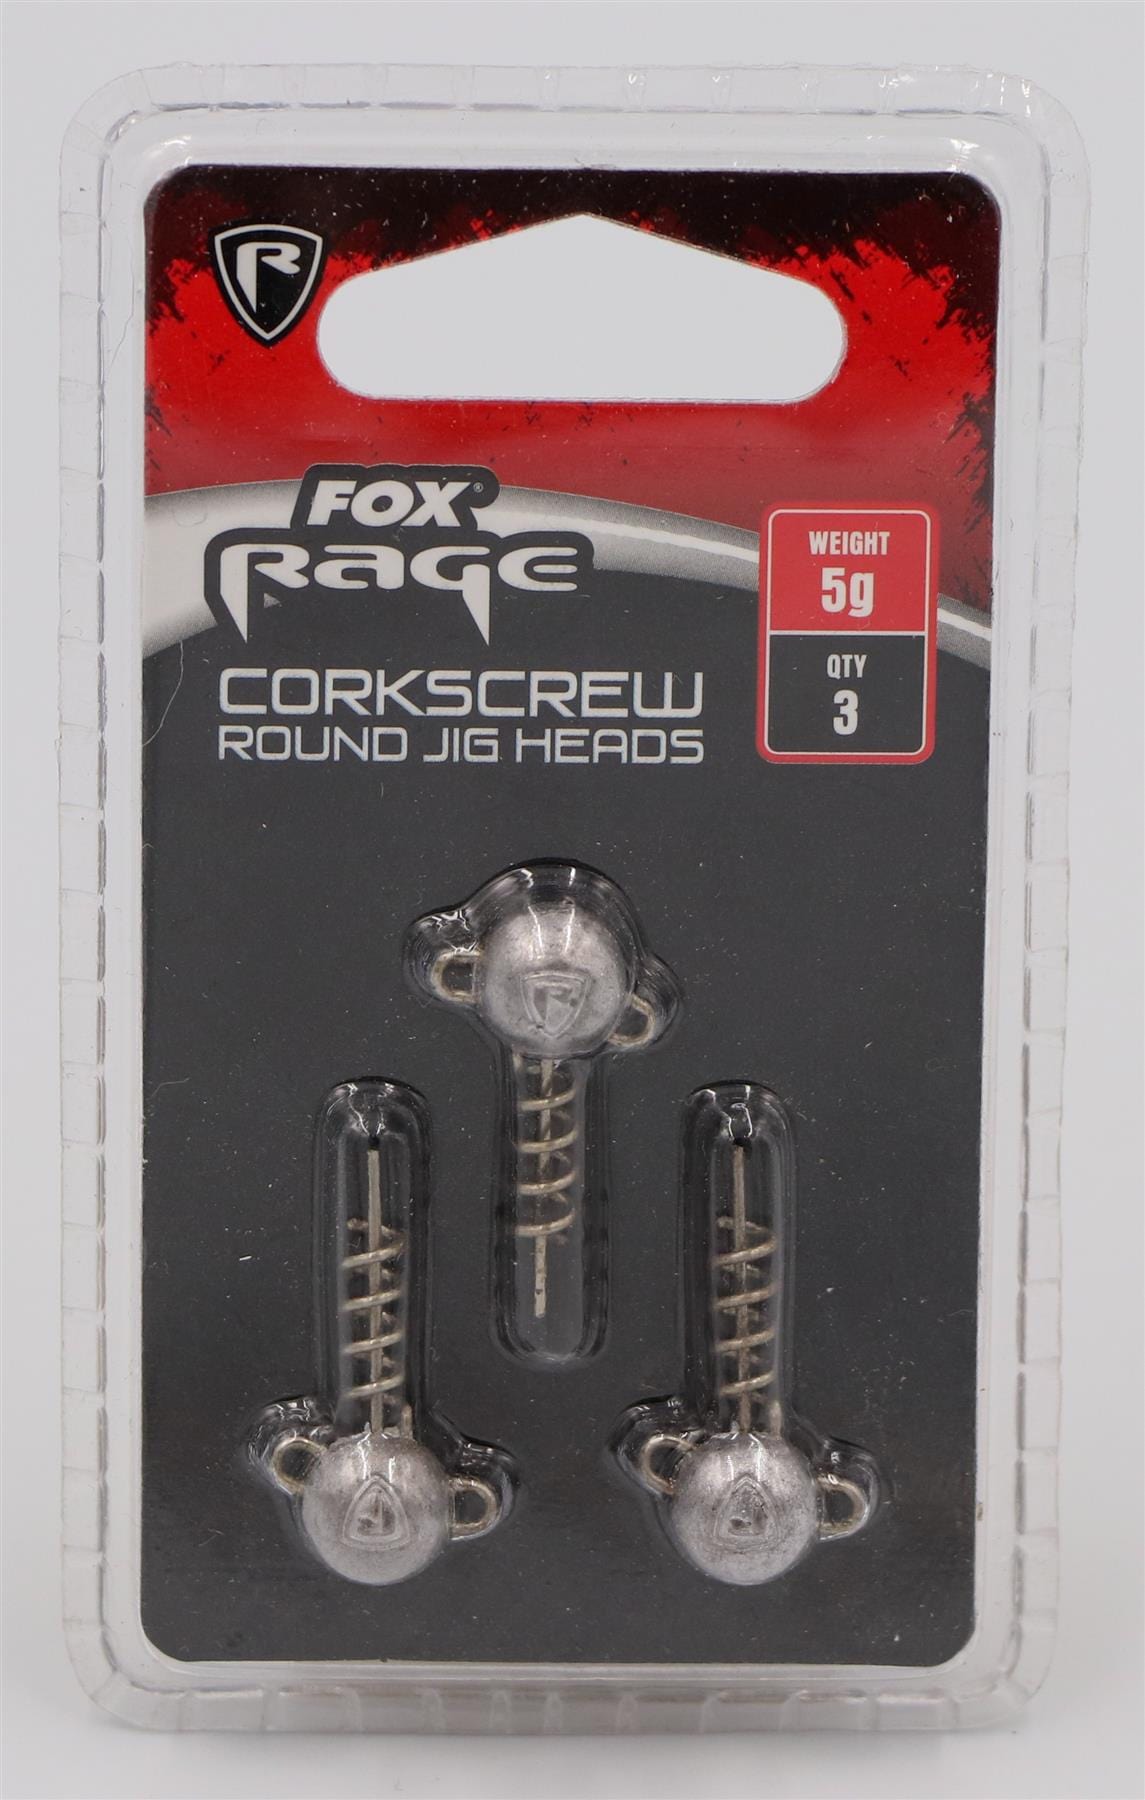 FOX Rage Corkscrew Jig Heads - 5g x3 Round.